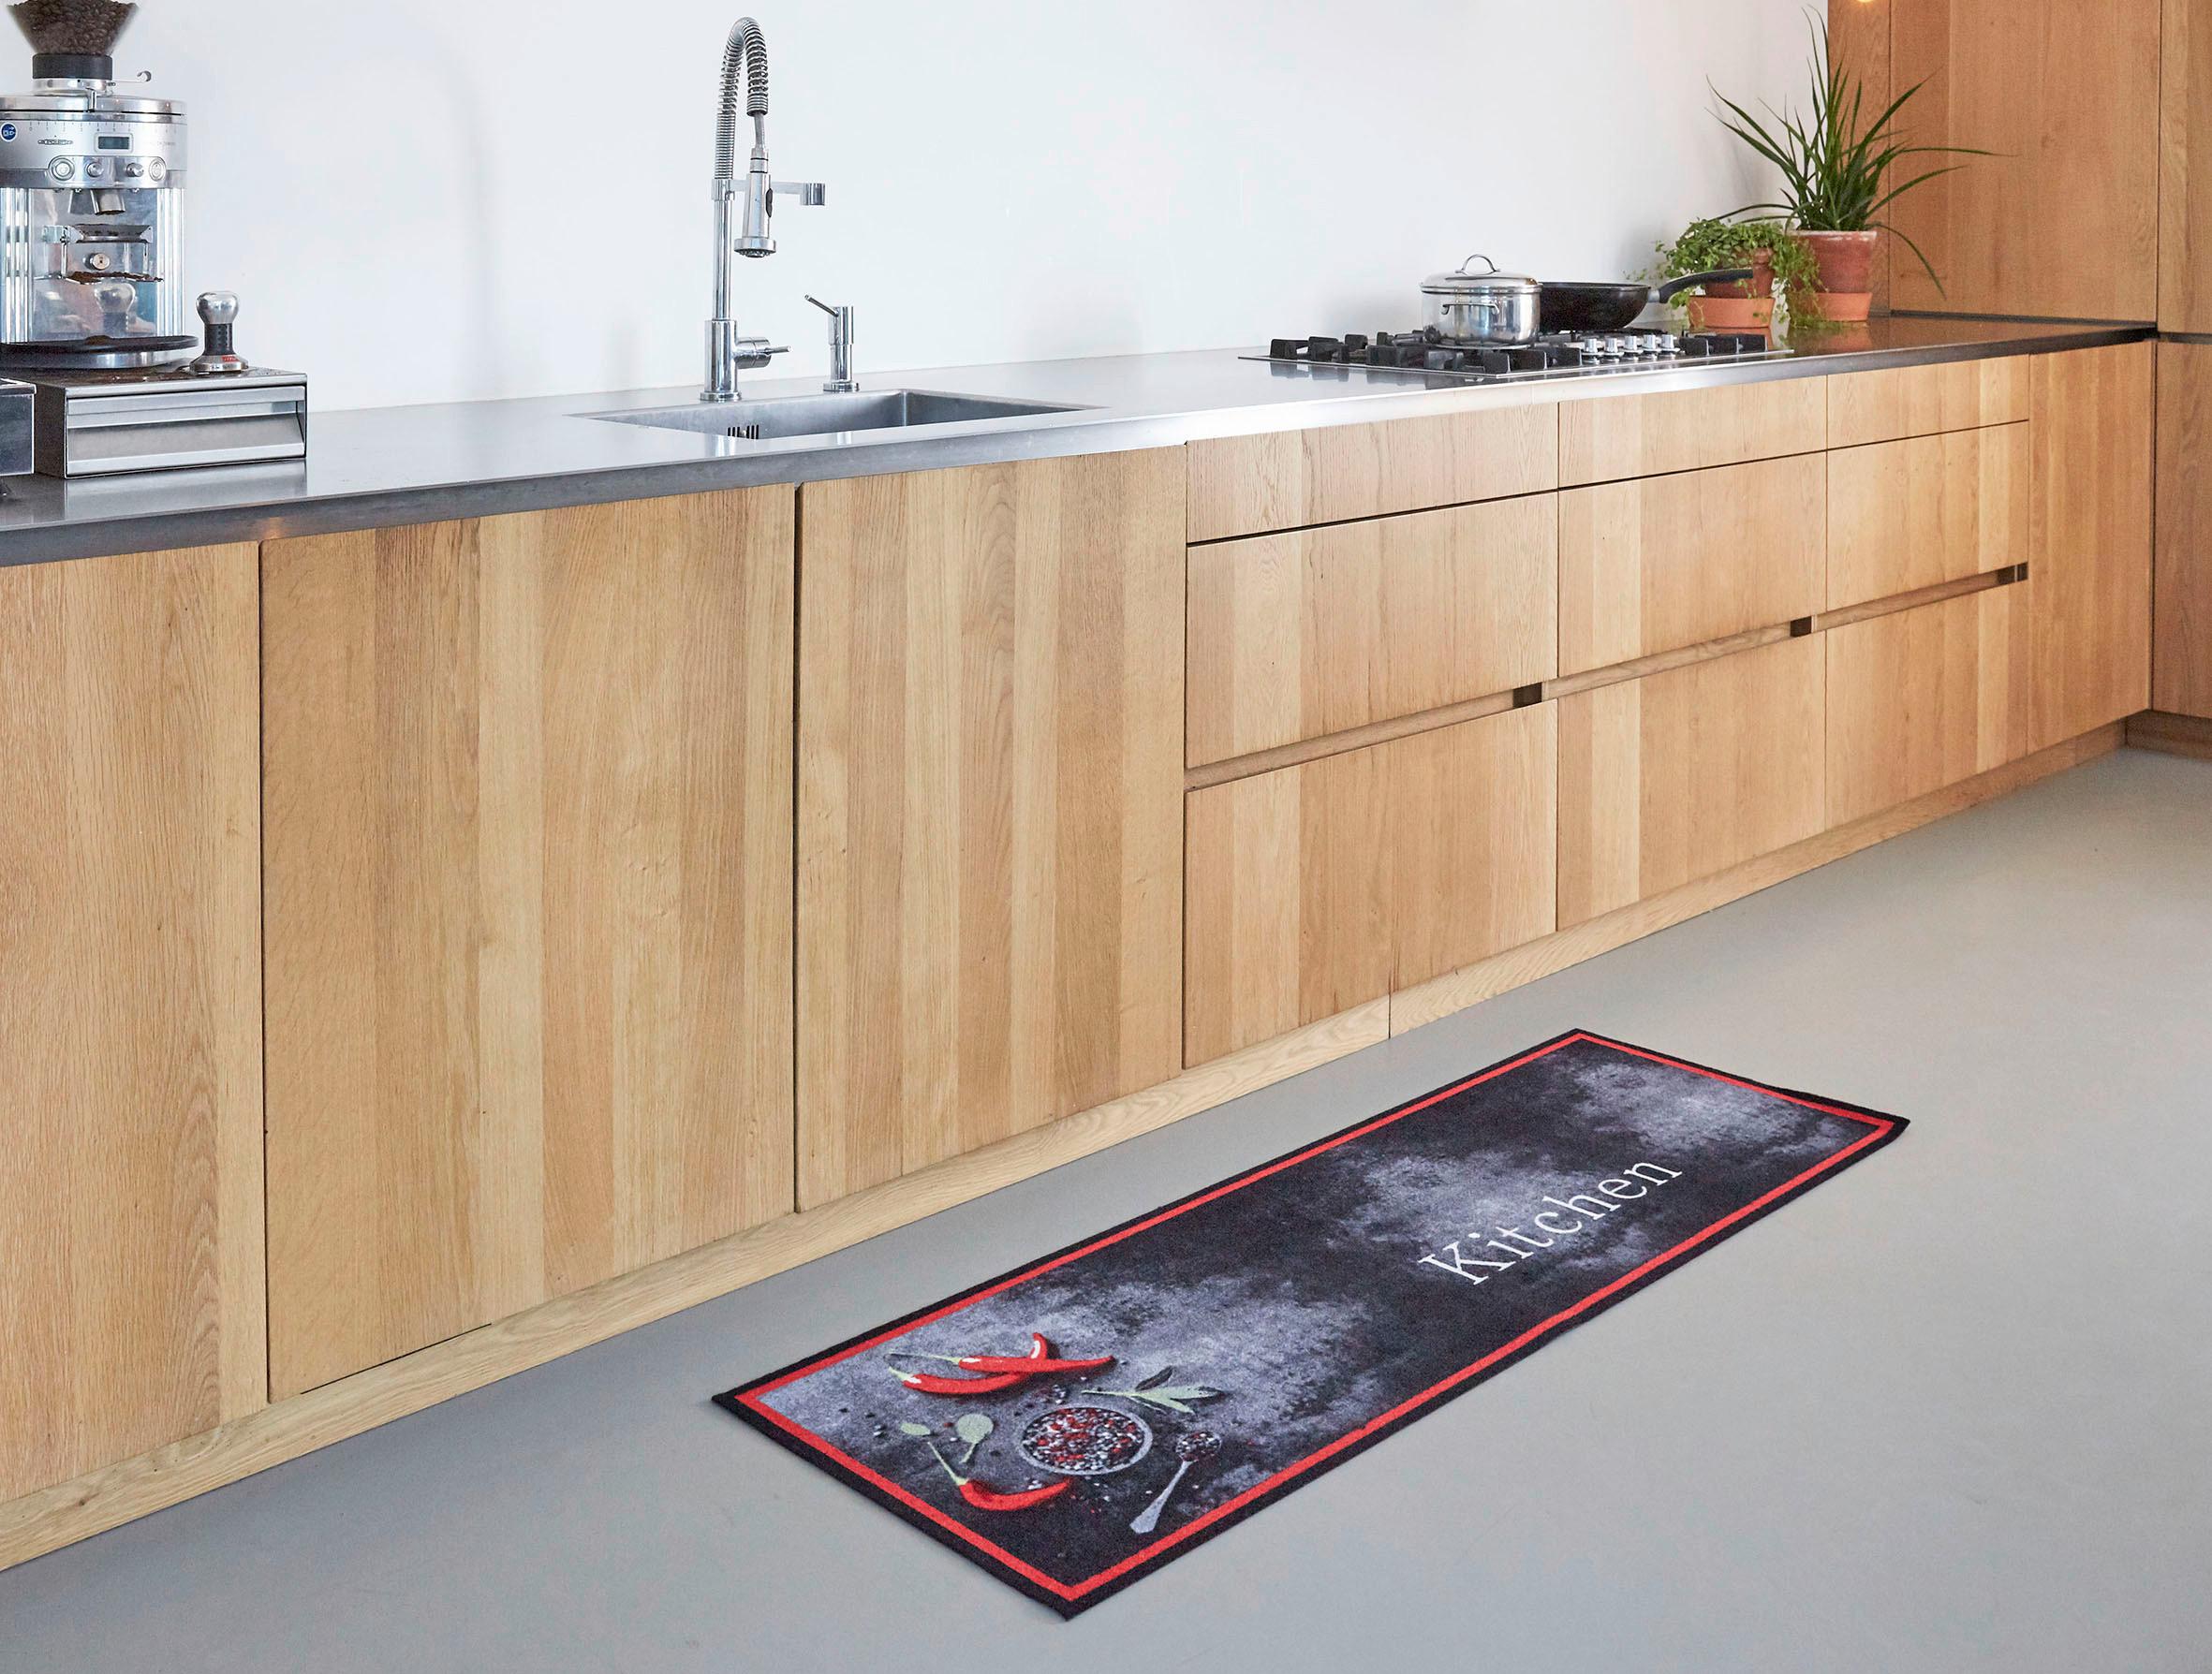 Futó Kitchen 50/150cm - Piros/Antracit, modern, Textil (50/150cm) - Modern Living